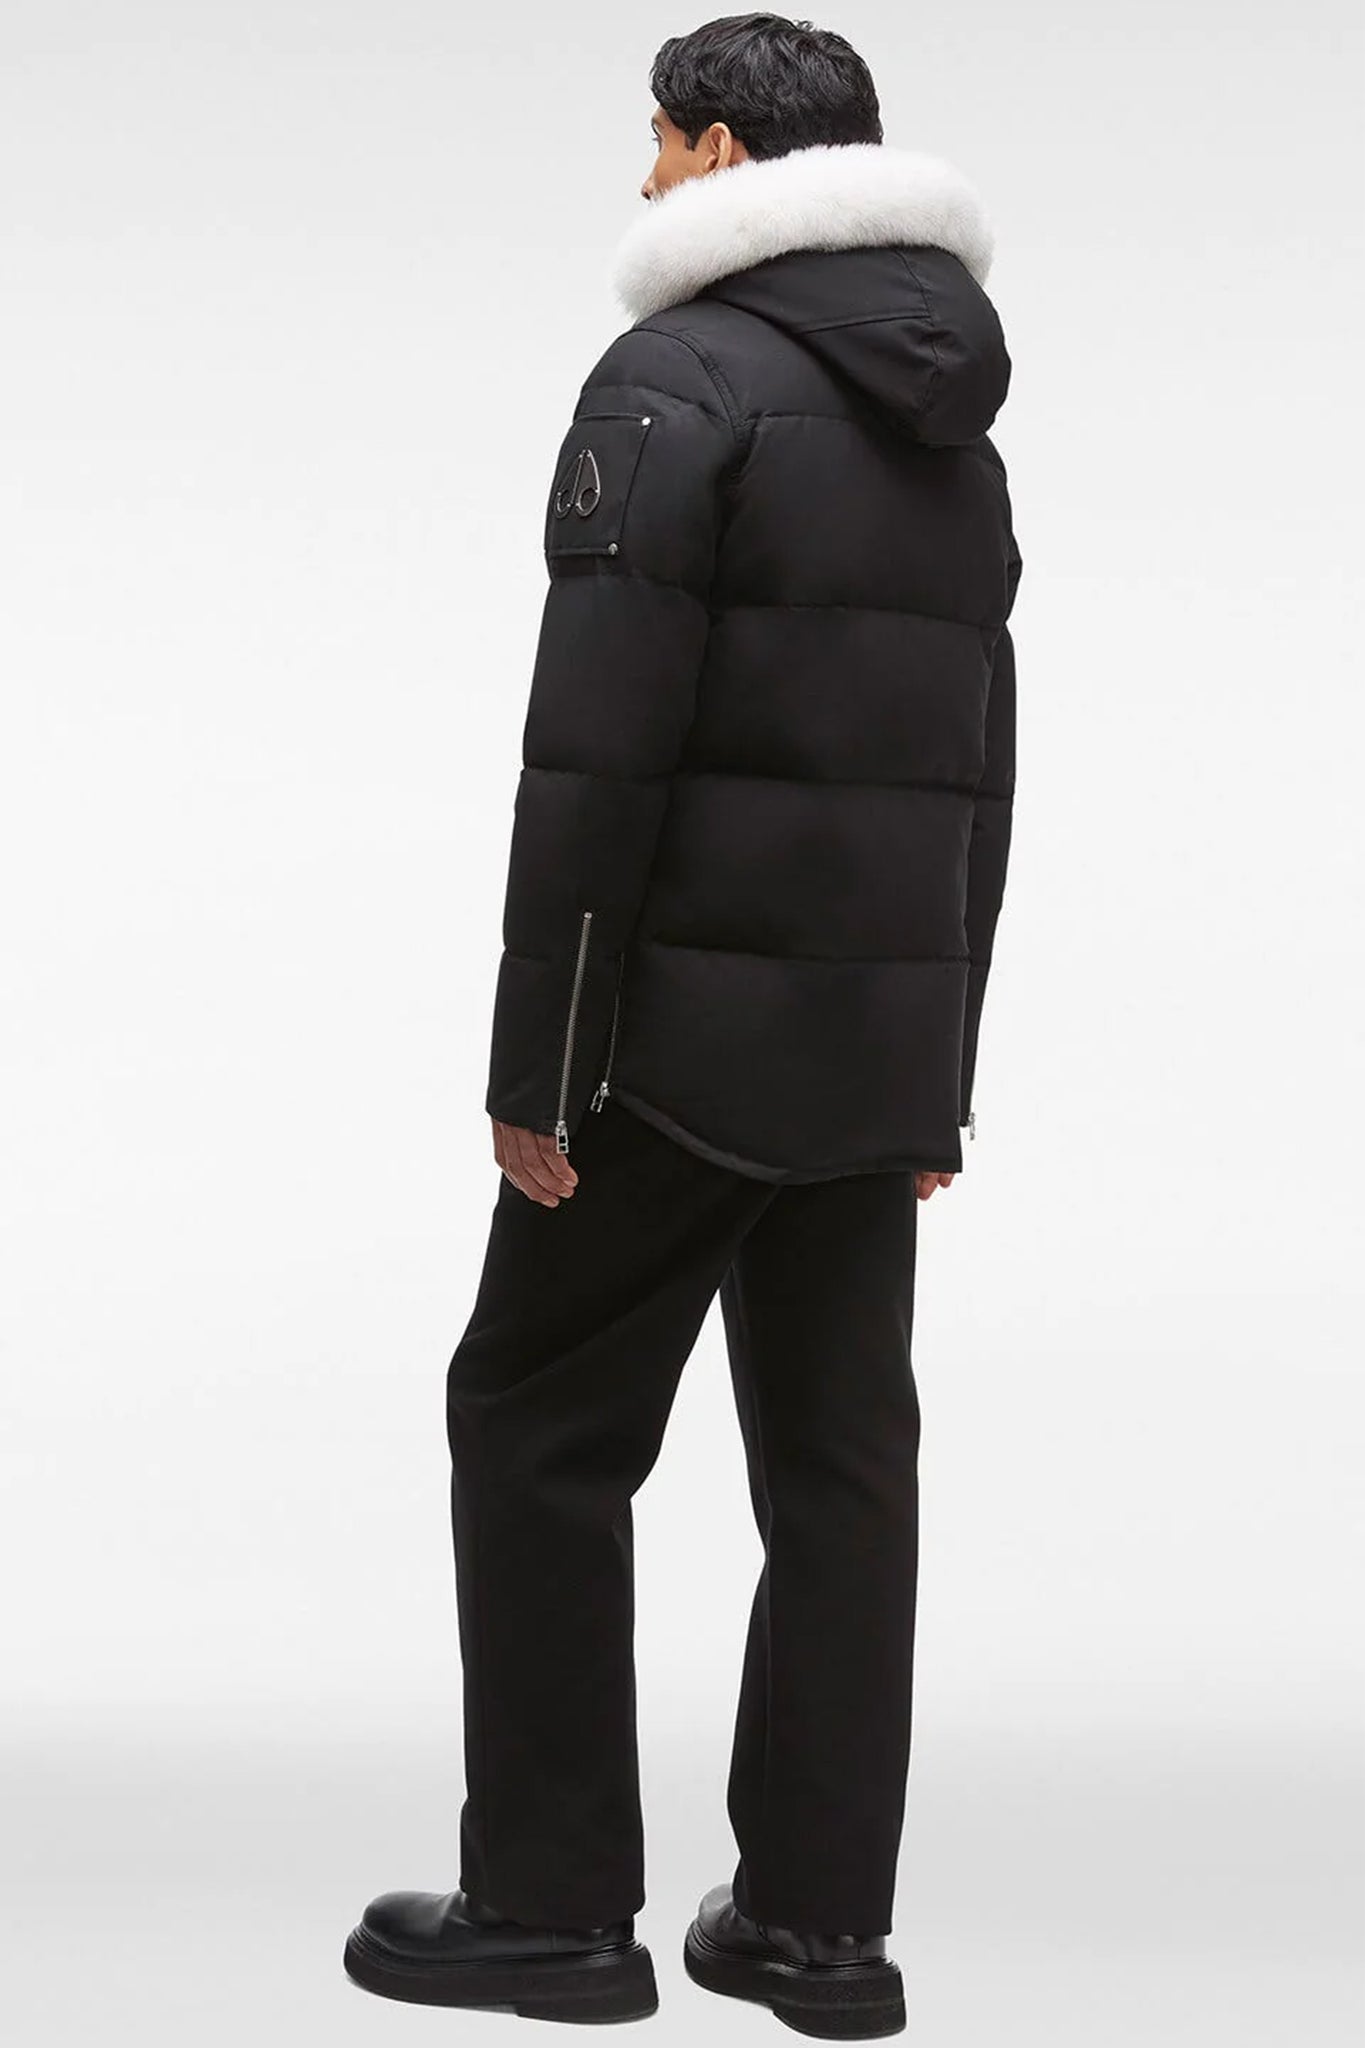 Moose Knuckles Men's 3Q Jacket in Black with Natural Fur